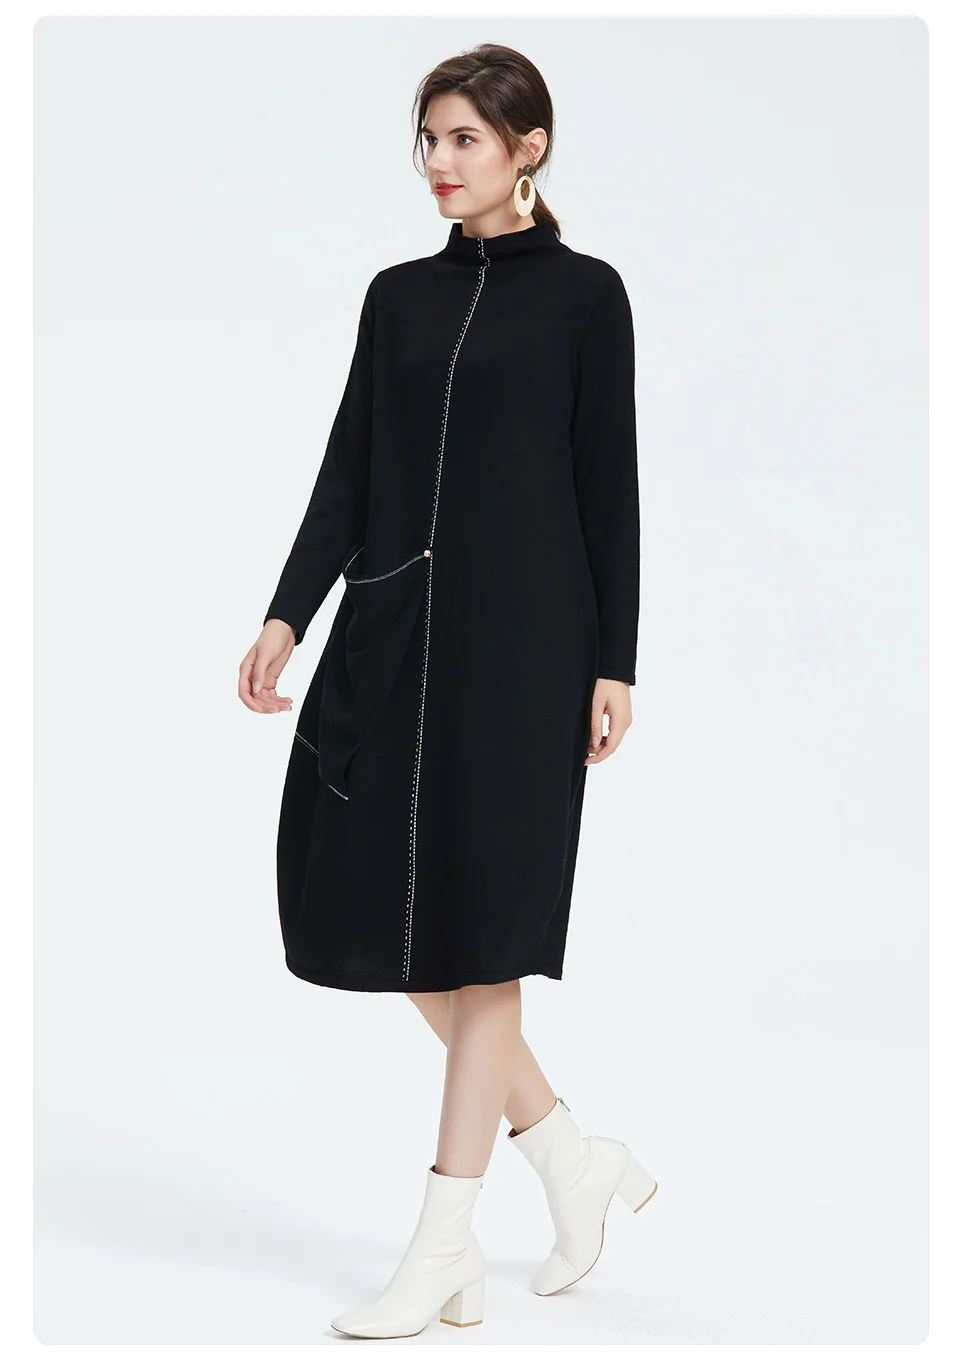 Astrid Осеннее новое поступление платье женский топ черный цвет с длинным рукавом высокое качество новая модная стильная одежда женское тонкое платье 9058